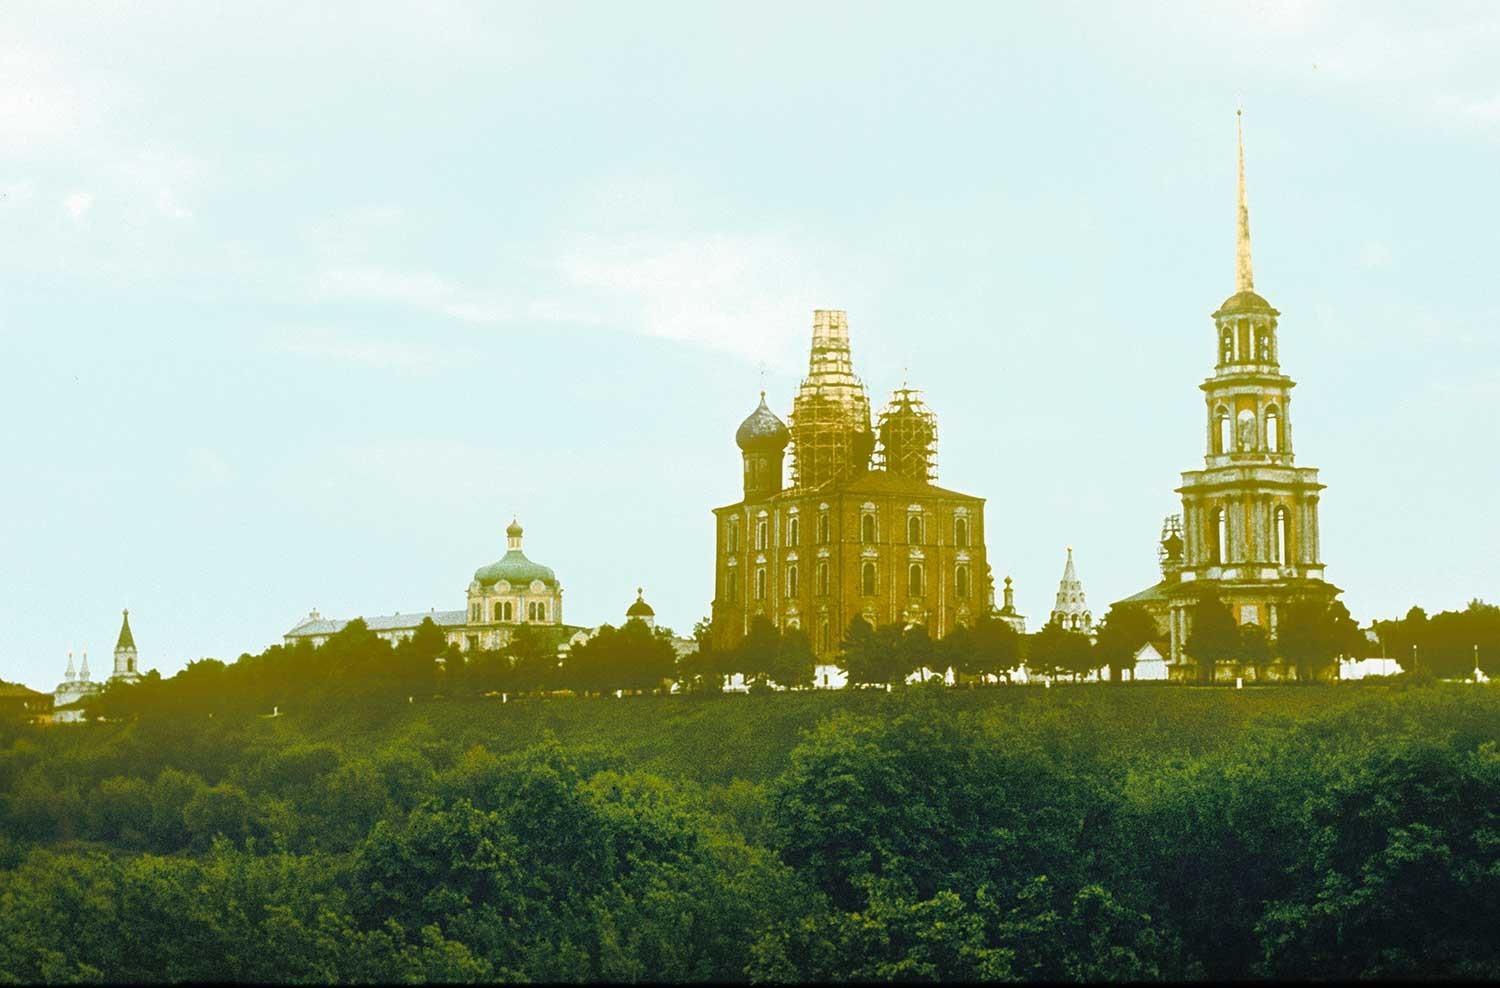 Kremlin de Riazán, vista noroeste. De izquierda a derecha: Iglesia del Espíritu Santo, Palacio Arzobispal, Catedral de la Natividad de Cristo, Catedral del Arcángel, Catedral de la Dormición, Iglesia de la Epifanía, Catedral de la Transfiguración, campanario. 13 de mayo de 1984.